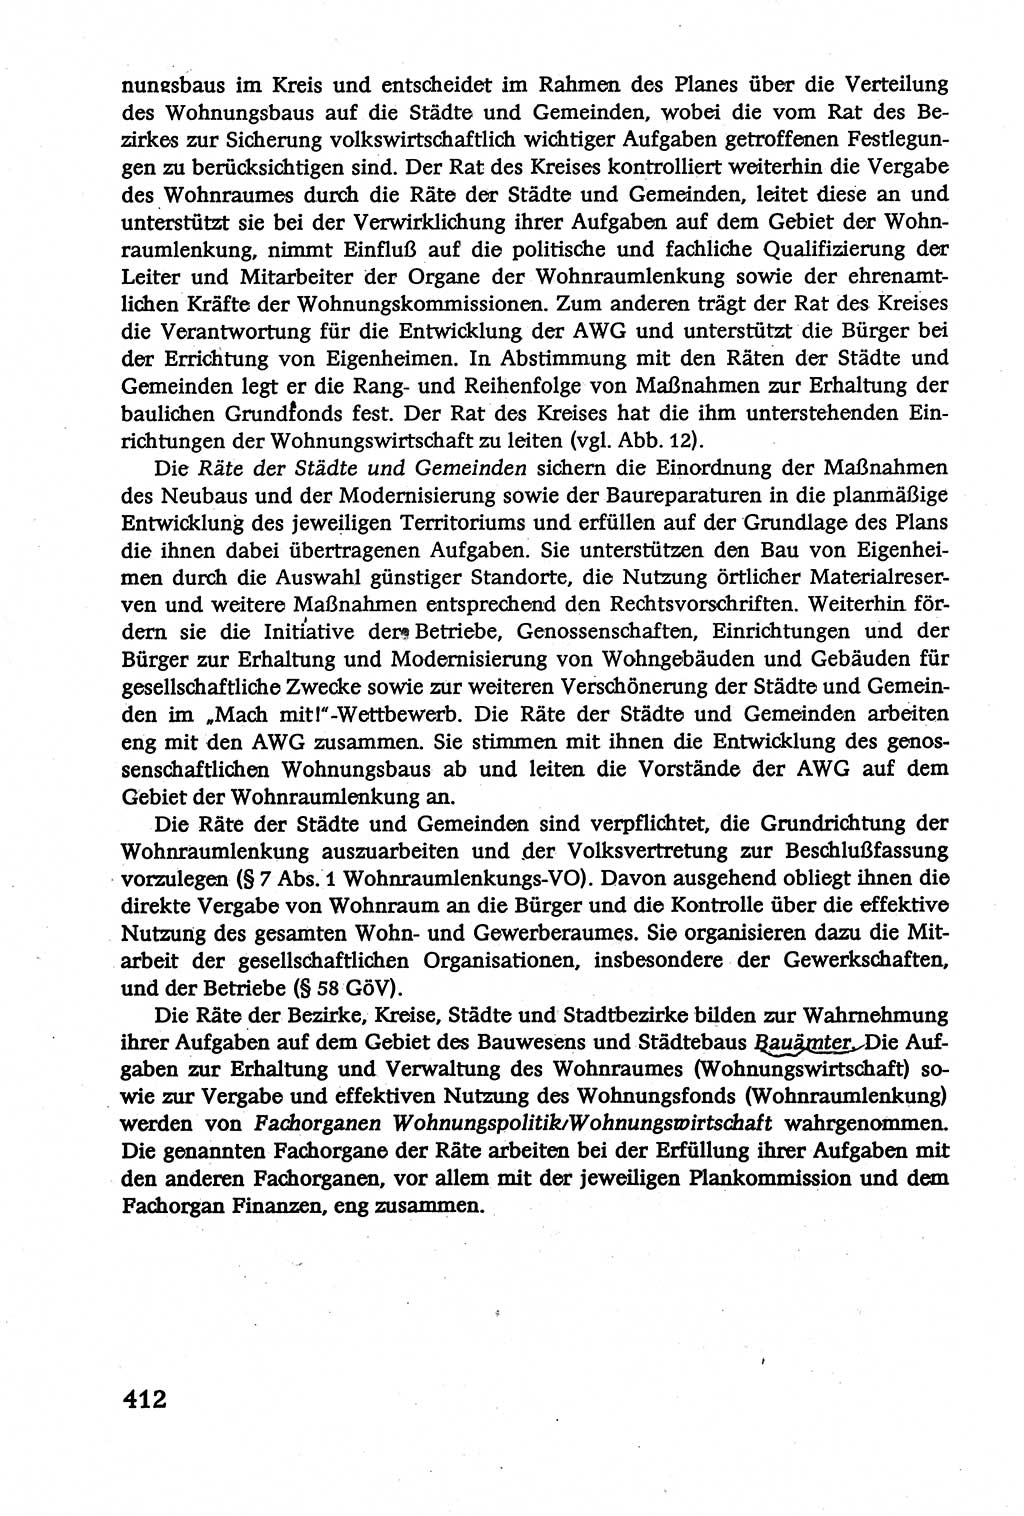 Verwaltungsrecht [Deutsche Demokratische Republik (DDR)], Lehrbuch 1979, Seite 412 (Verw.-R. DDR Lb. 1979, S. 412)